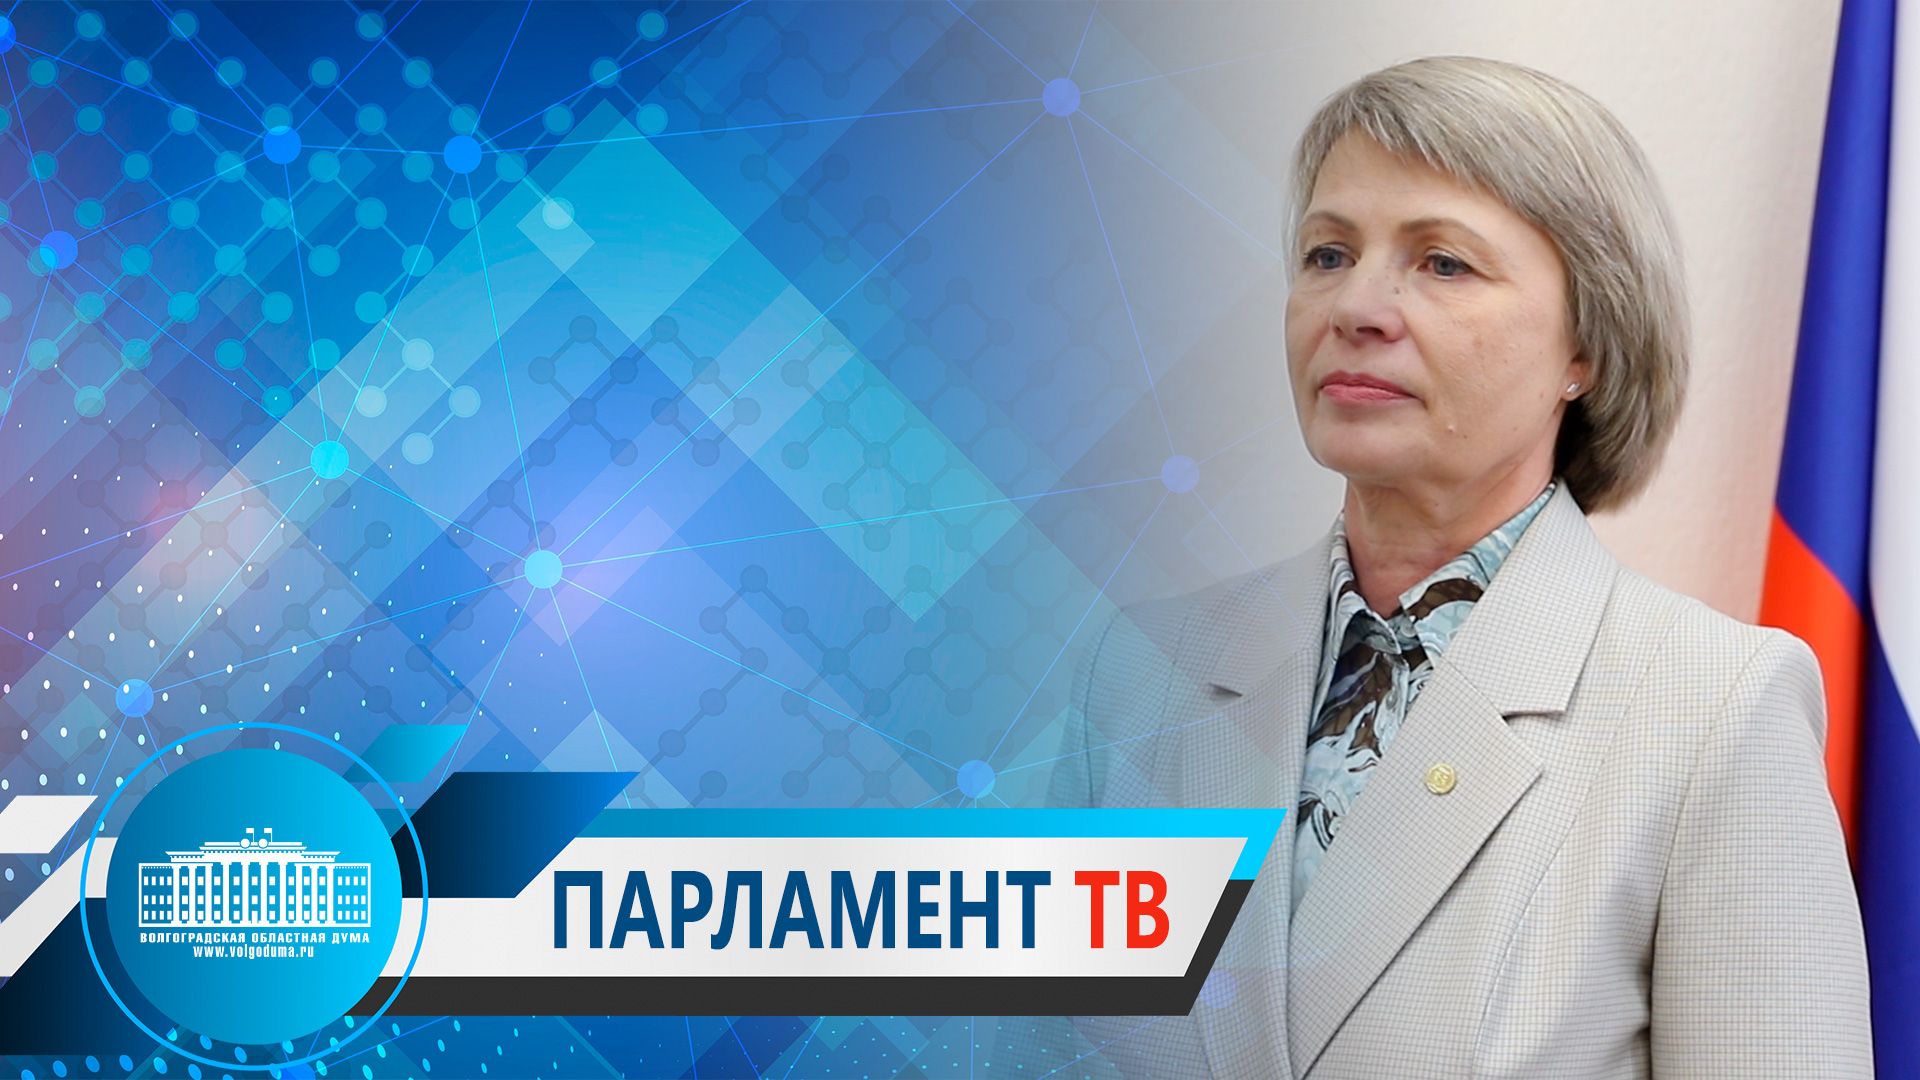 Татьяна Распутина: "В закон о бесплатной юридической помощи предложено внести уточнения"